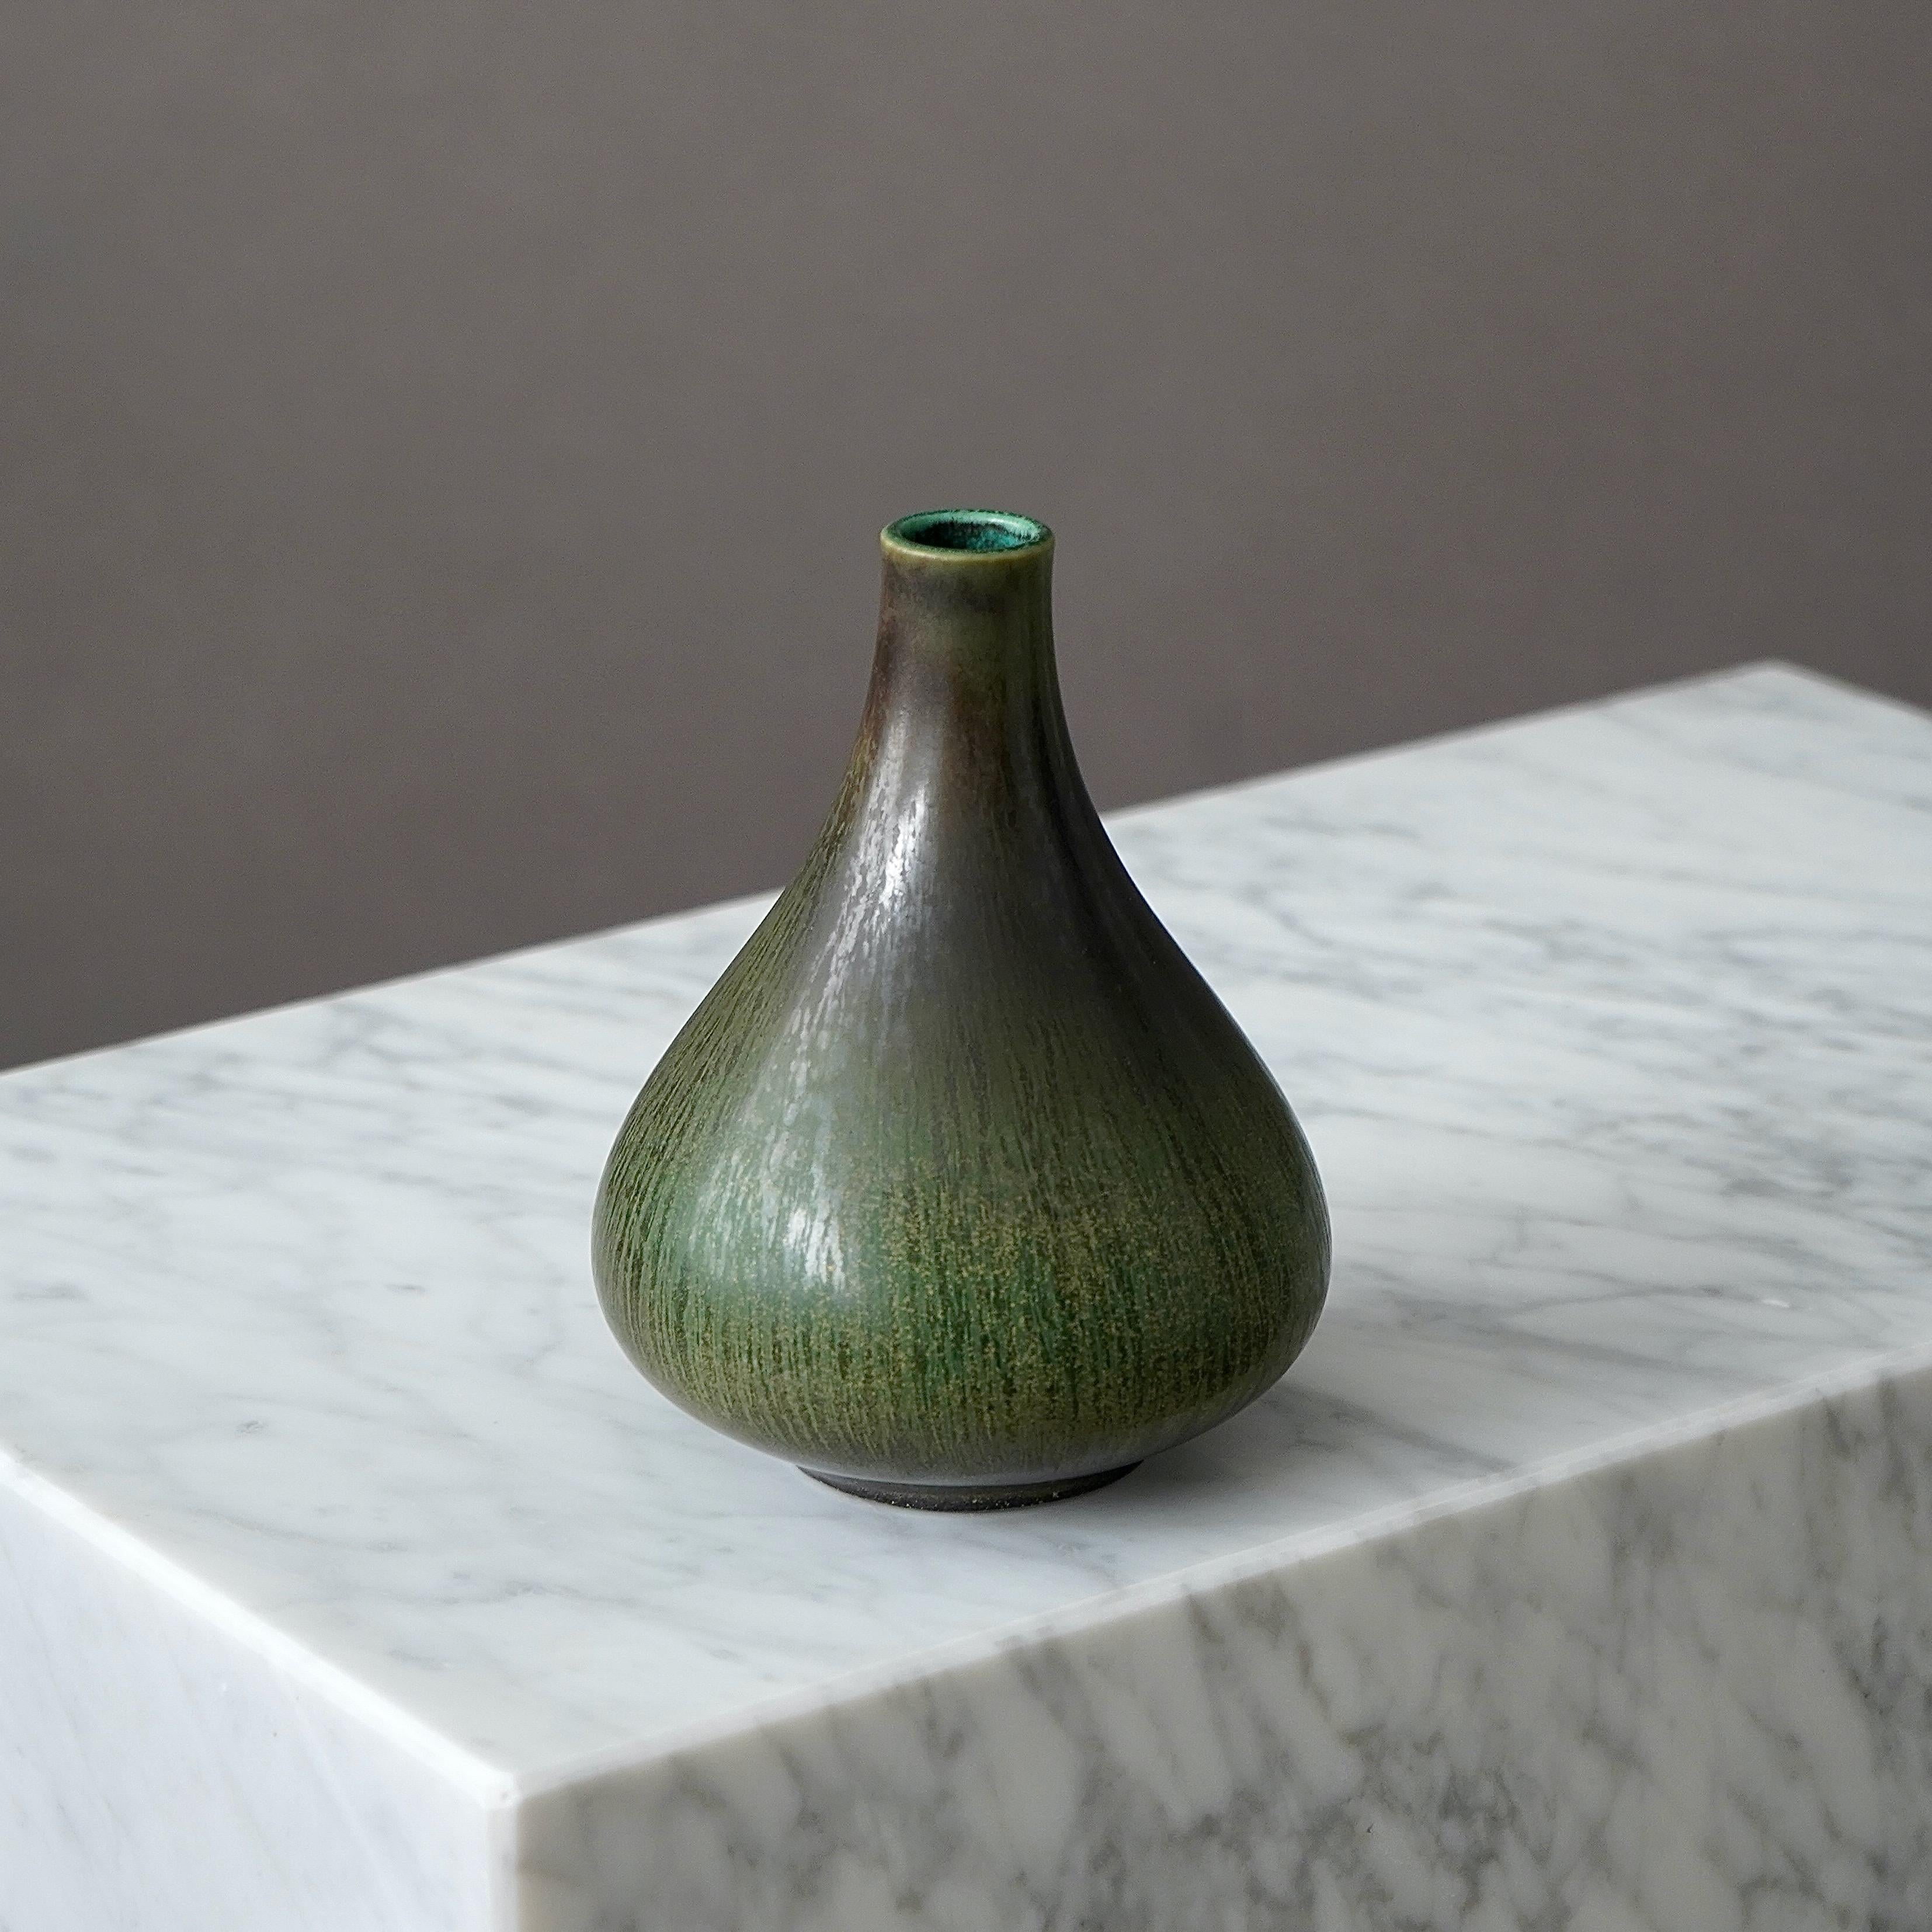 Eine schöne und seltene Vase aus Steingut mit erstaunlicher Glasur. 
Entworfen von Gunnar Nylund für Rorstrand, Schweden, 1950er Jahre.  

Eingeschnittene Signatur 